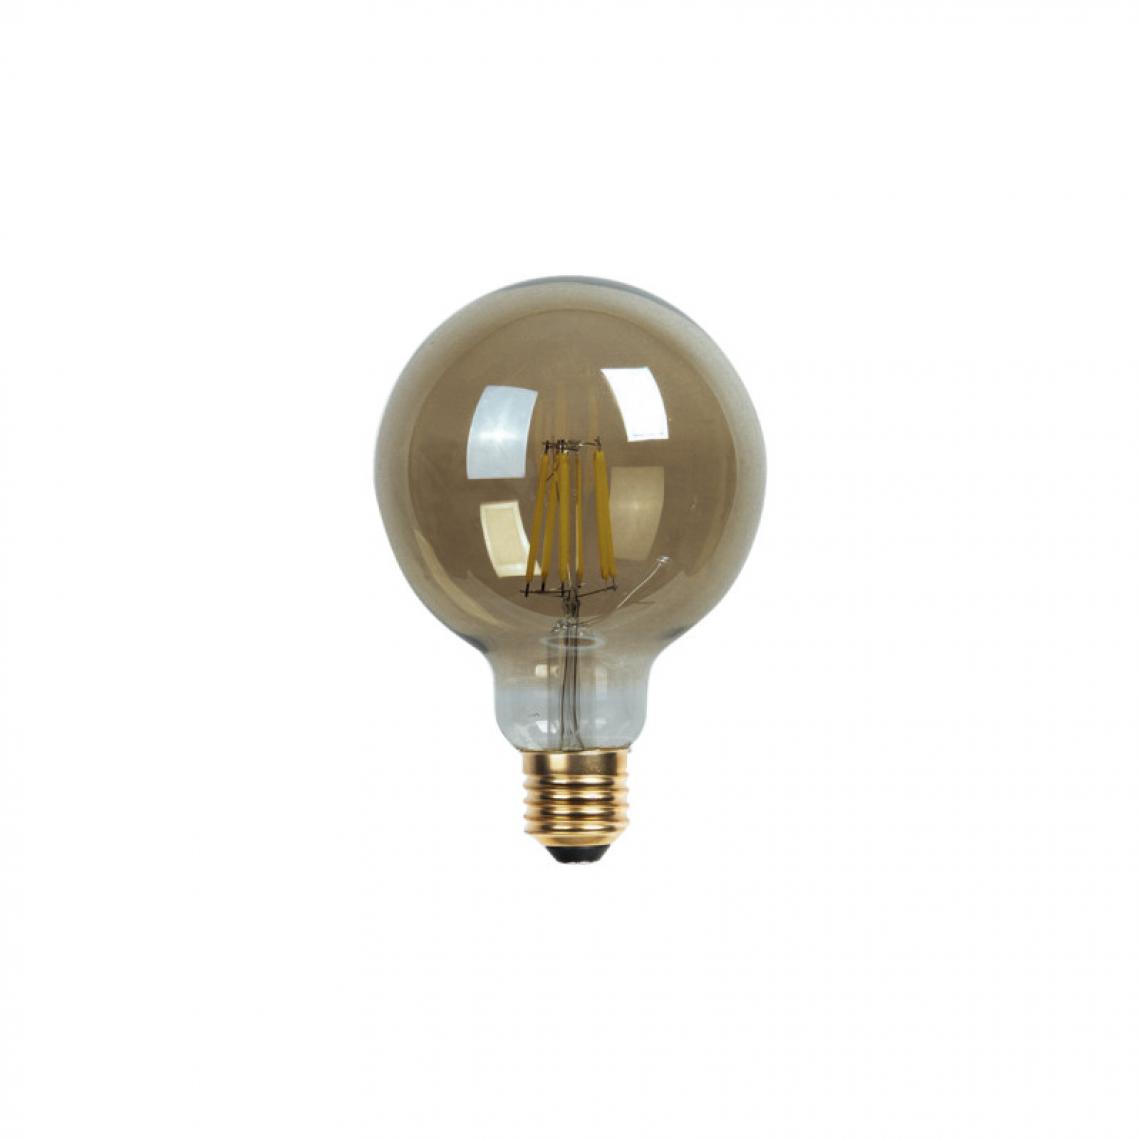 Xxcell - Ampoule LED globe fumée XXCELL - 6 W - 350 lumens - 2700 K - E27 - Ampoules LED